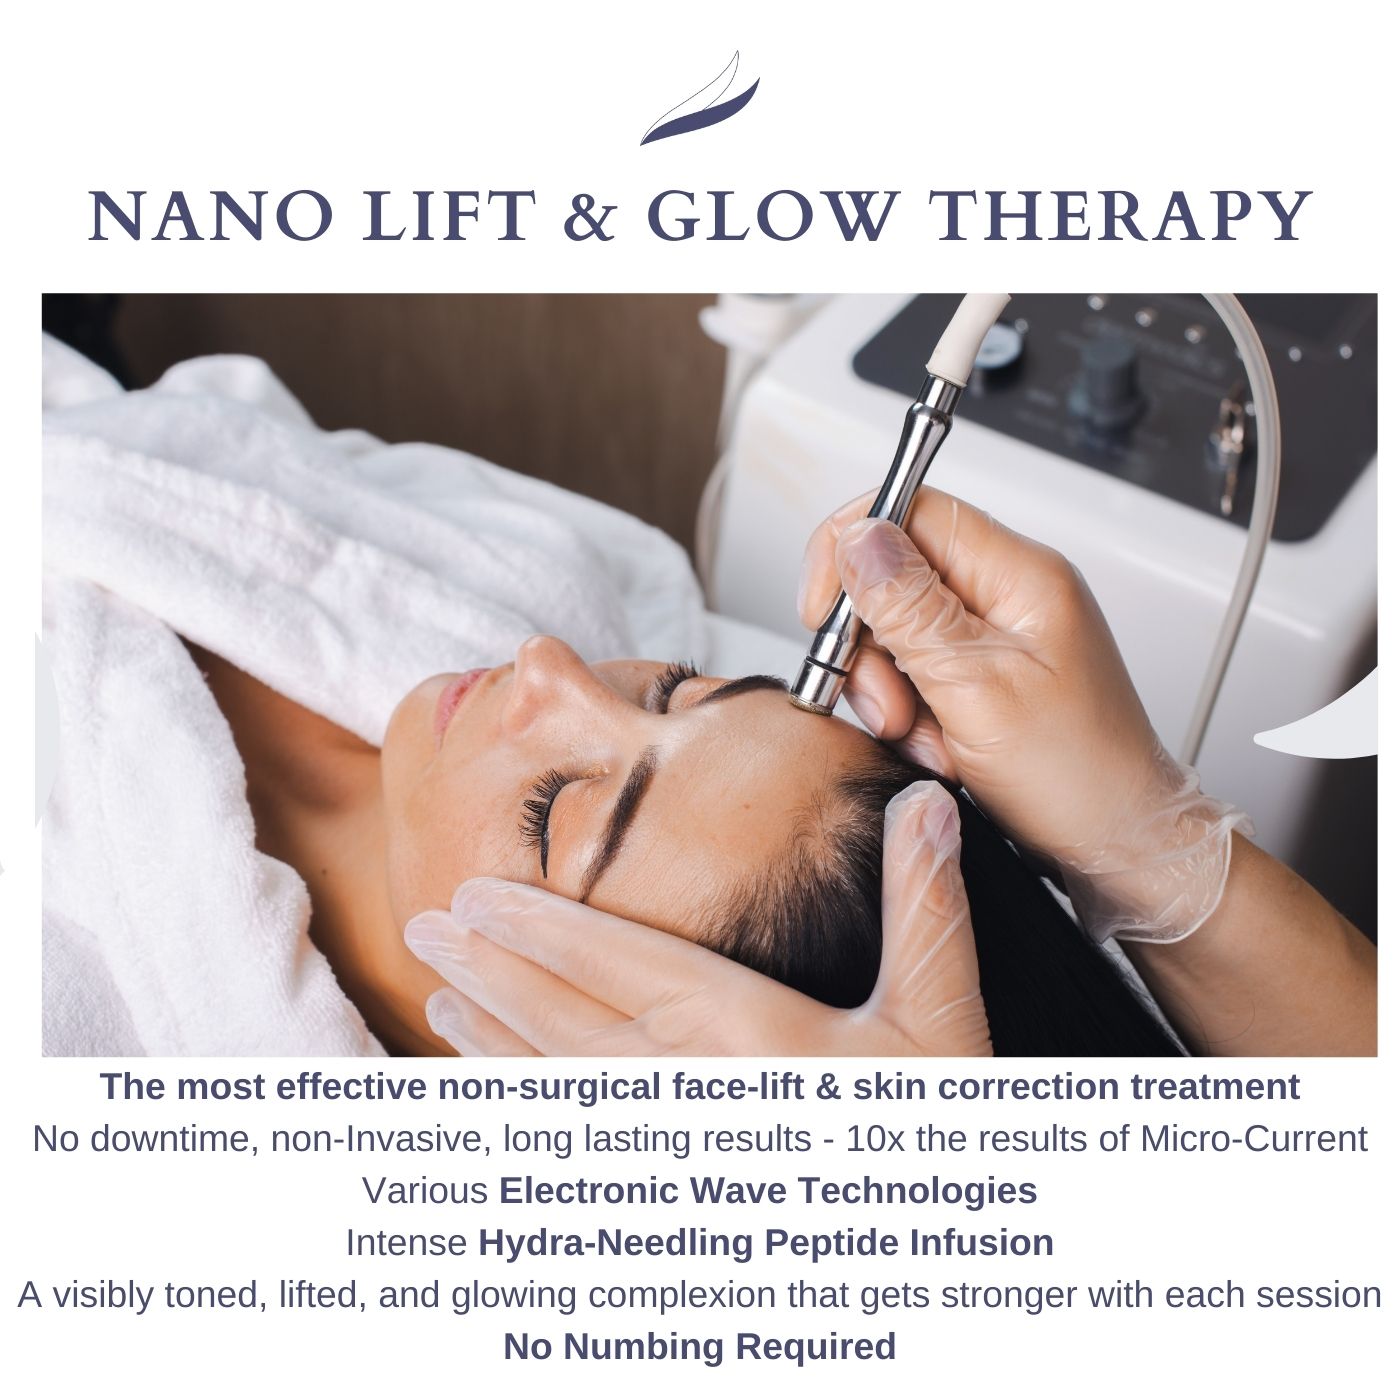 Nano Lift & Glow Therapy